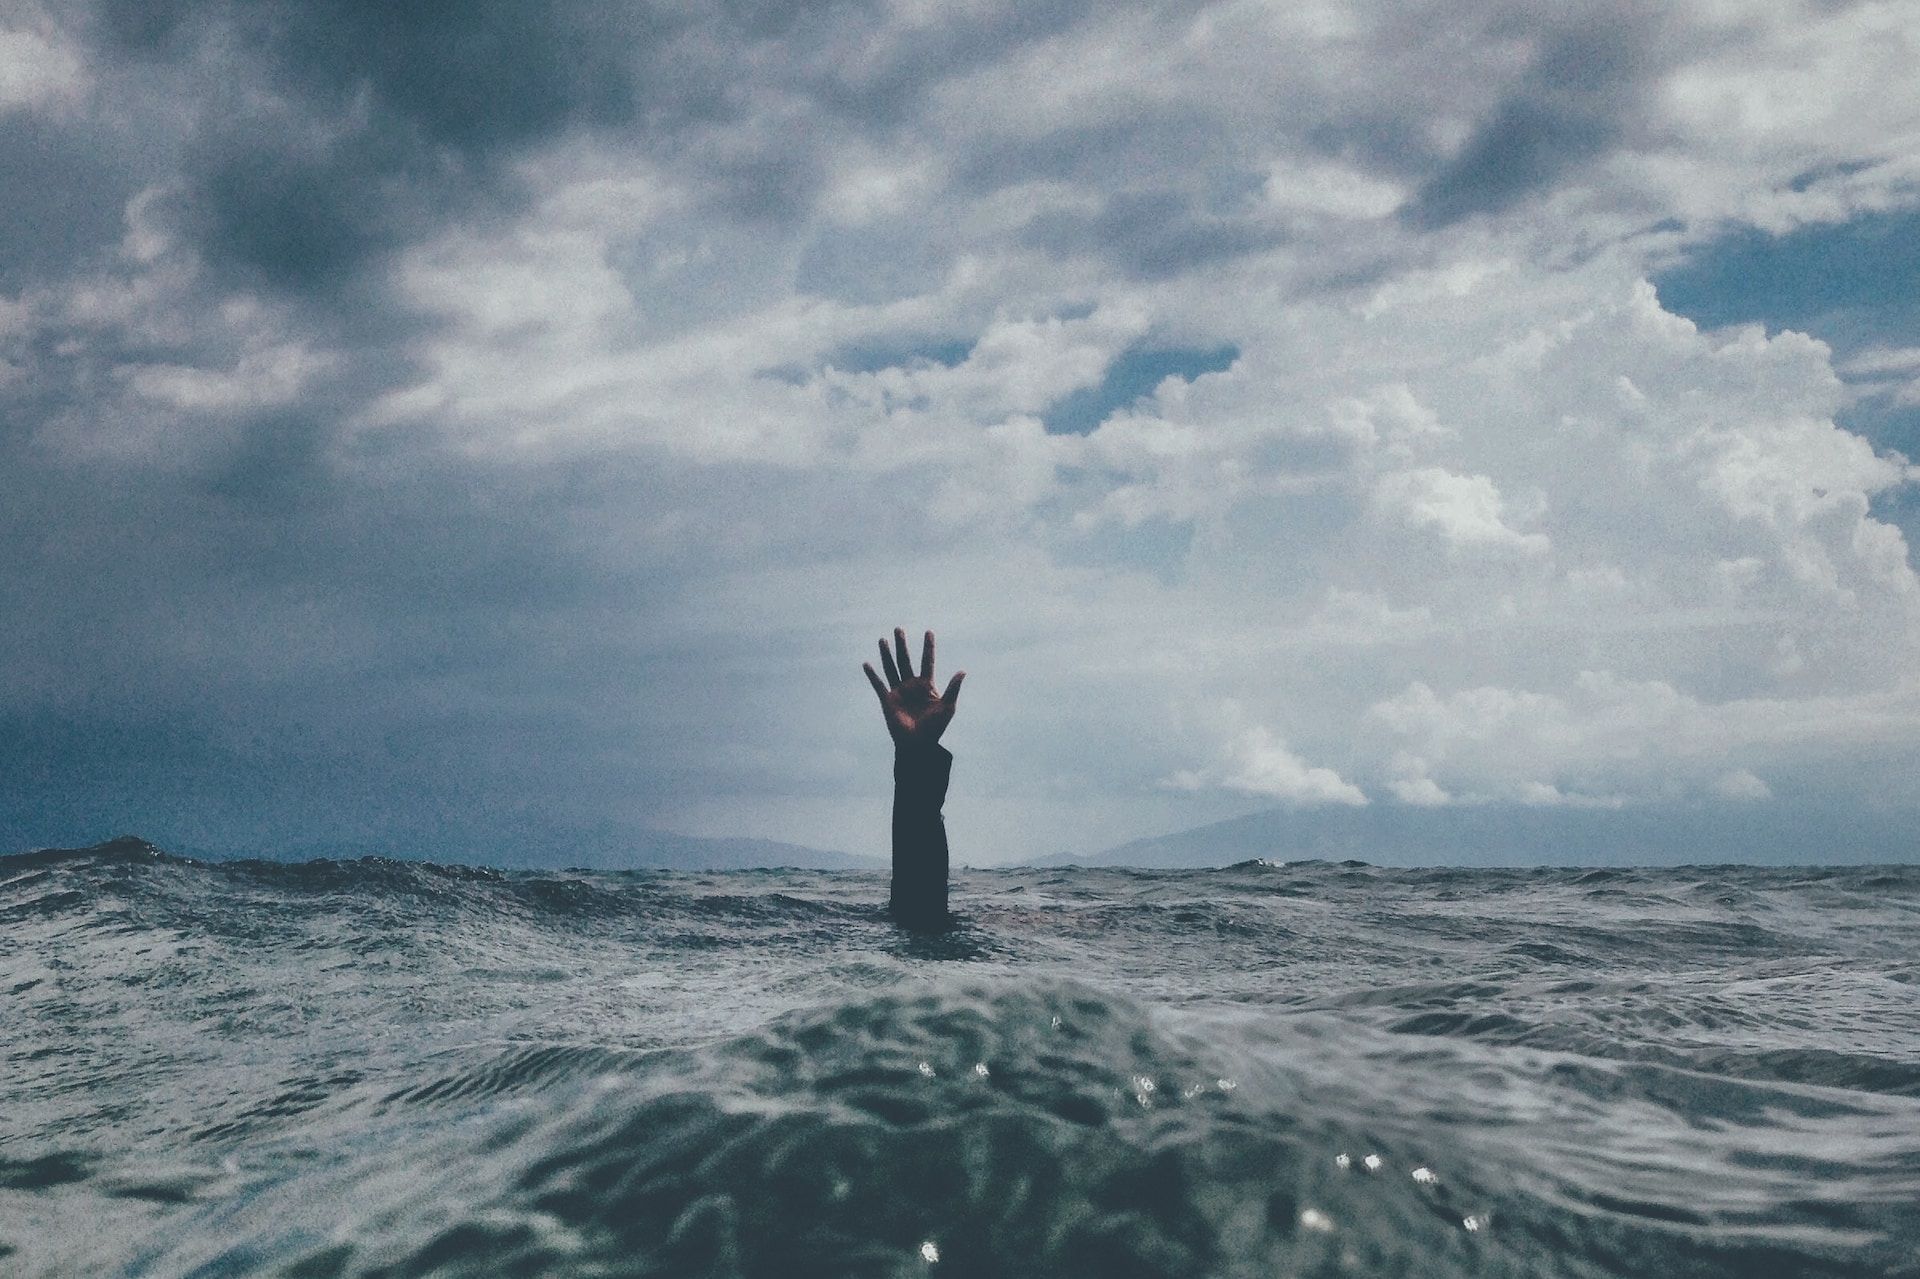 Une main tendue vers le ciel du fond de l'eau - Photo de nikko macaspac sur https://unsplash.com/fr/photos/6SNbWyFwuhk